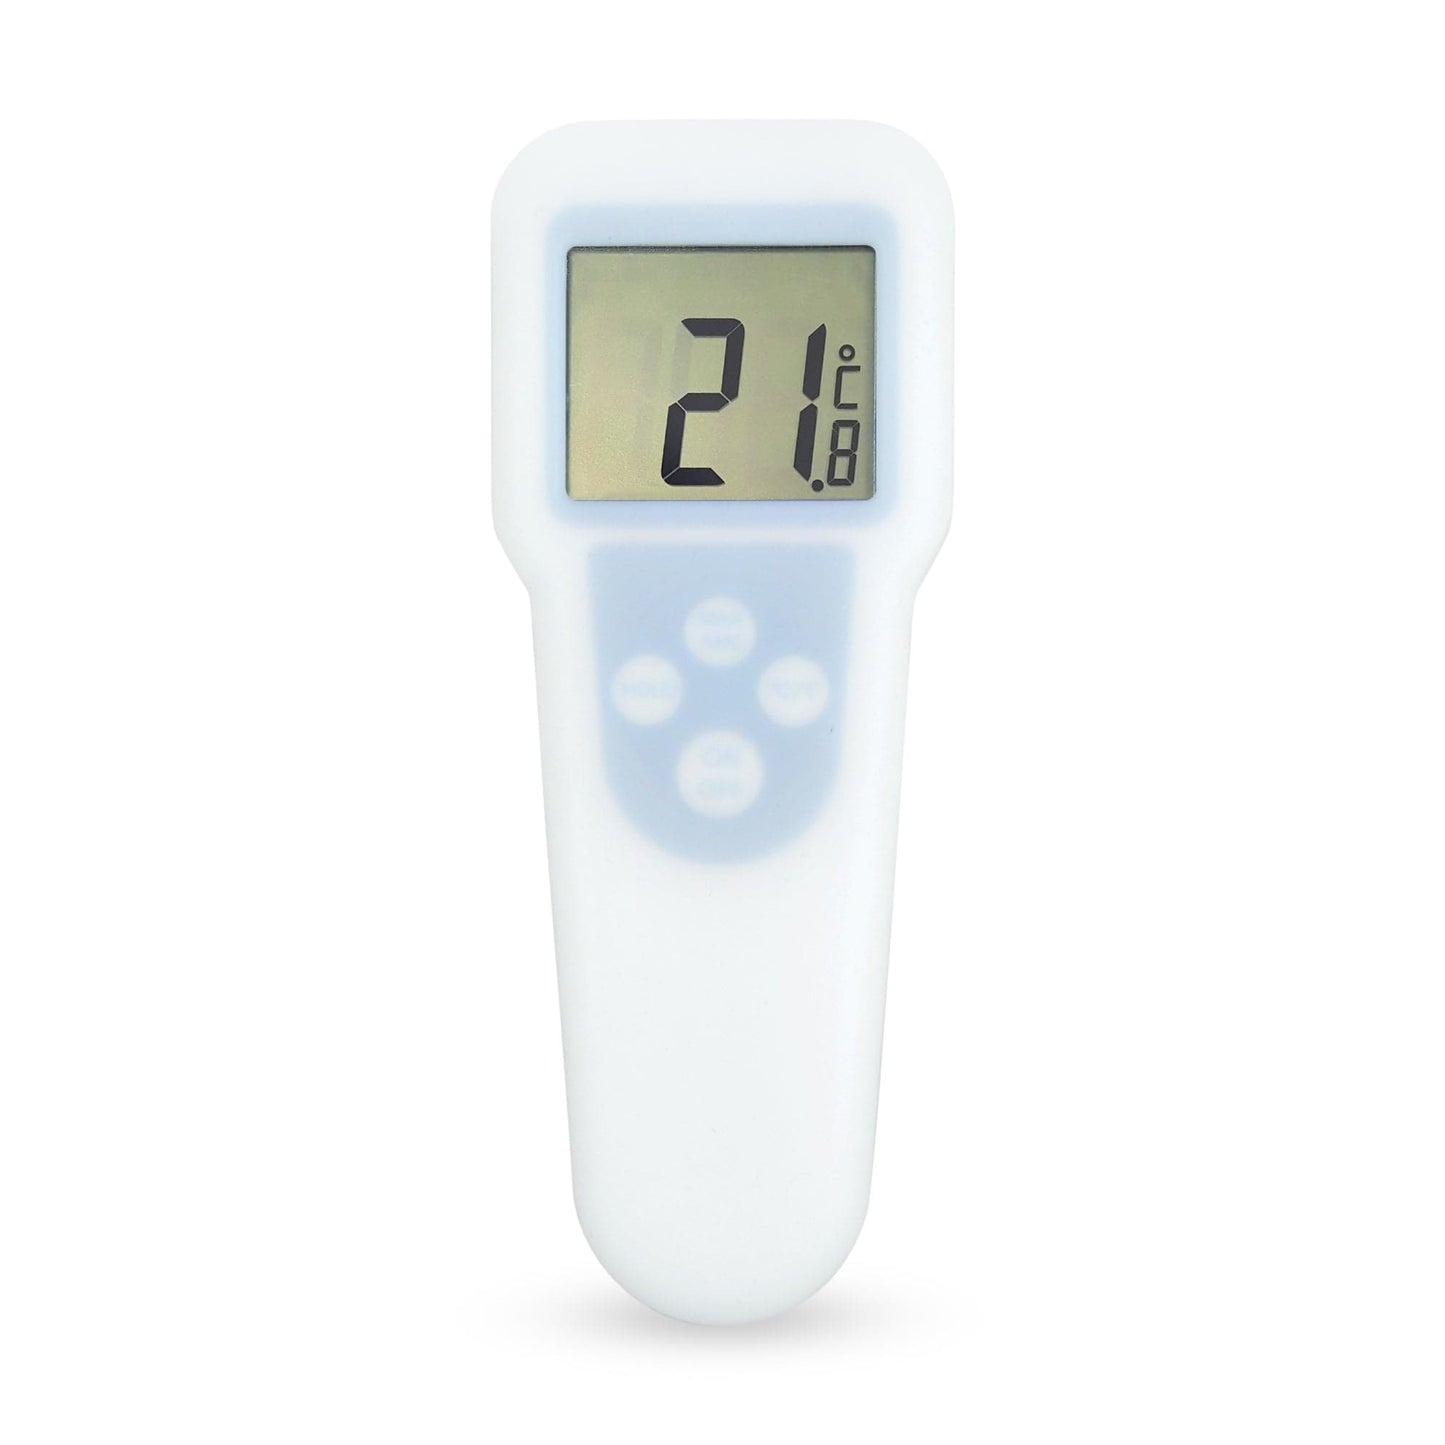 Un thermomètre numérique Thermometre.fr sur fond blanc.